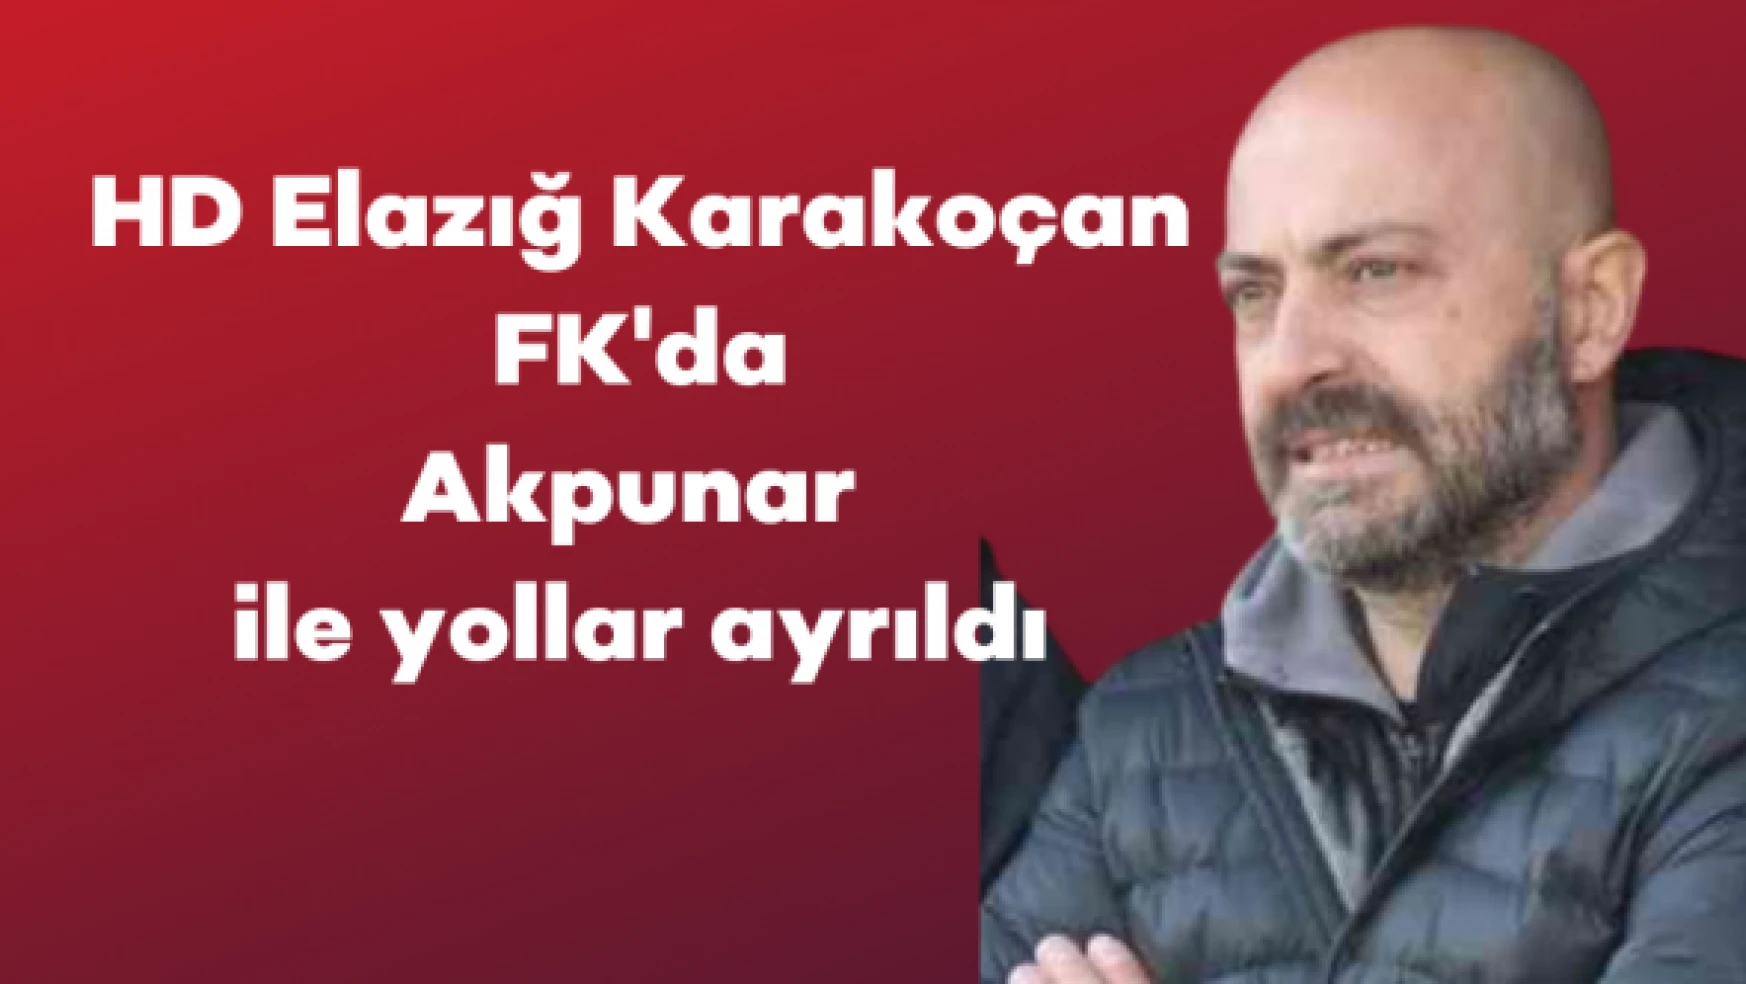 HD Elazığ Karakoçan FK'da, Akpunar ile yollar ayrıldı!